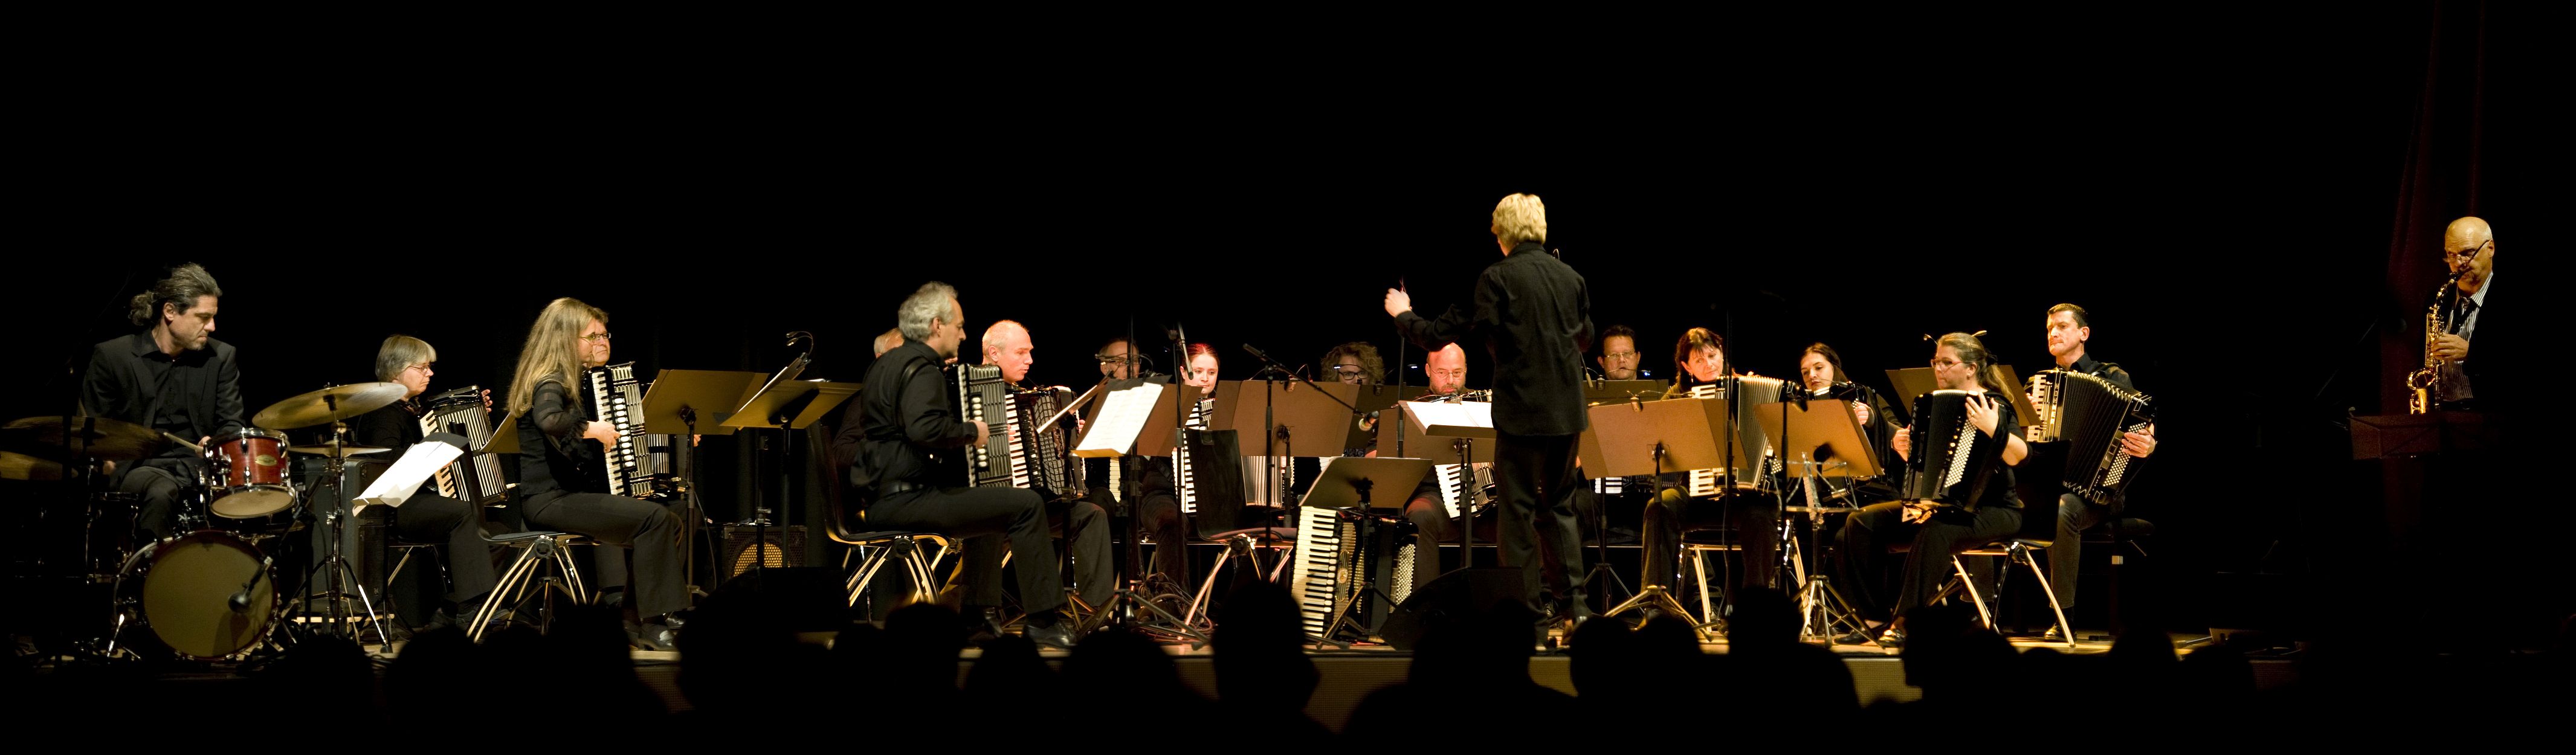 Freiburger Akkordeon Orchester